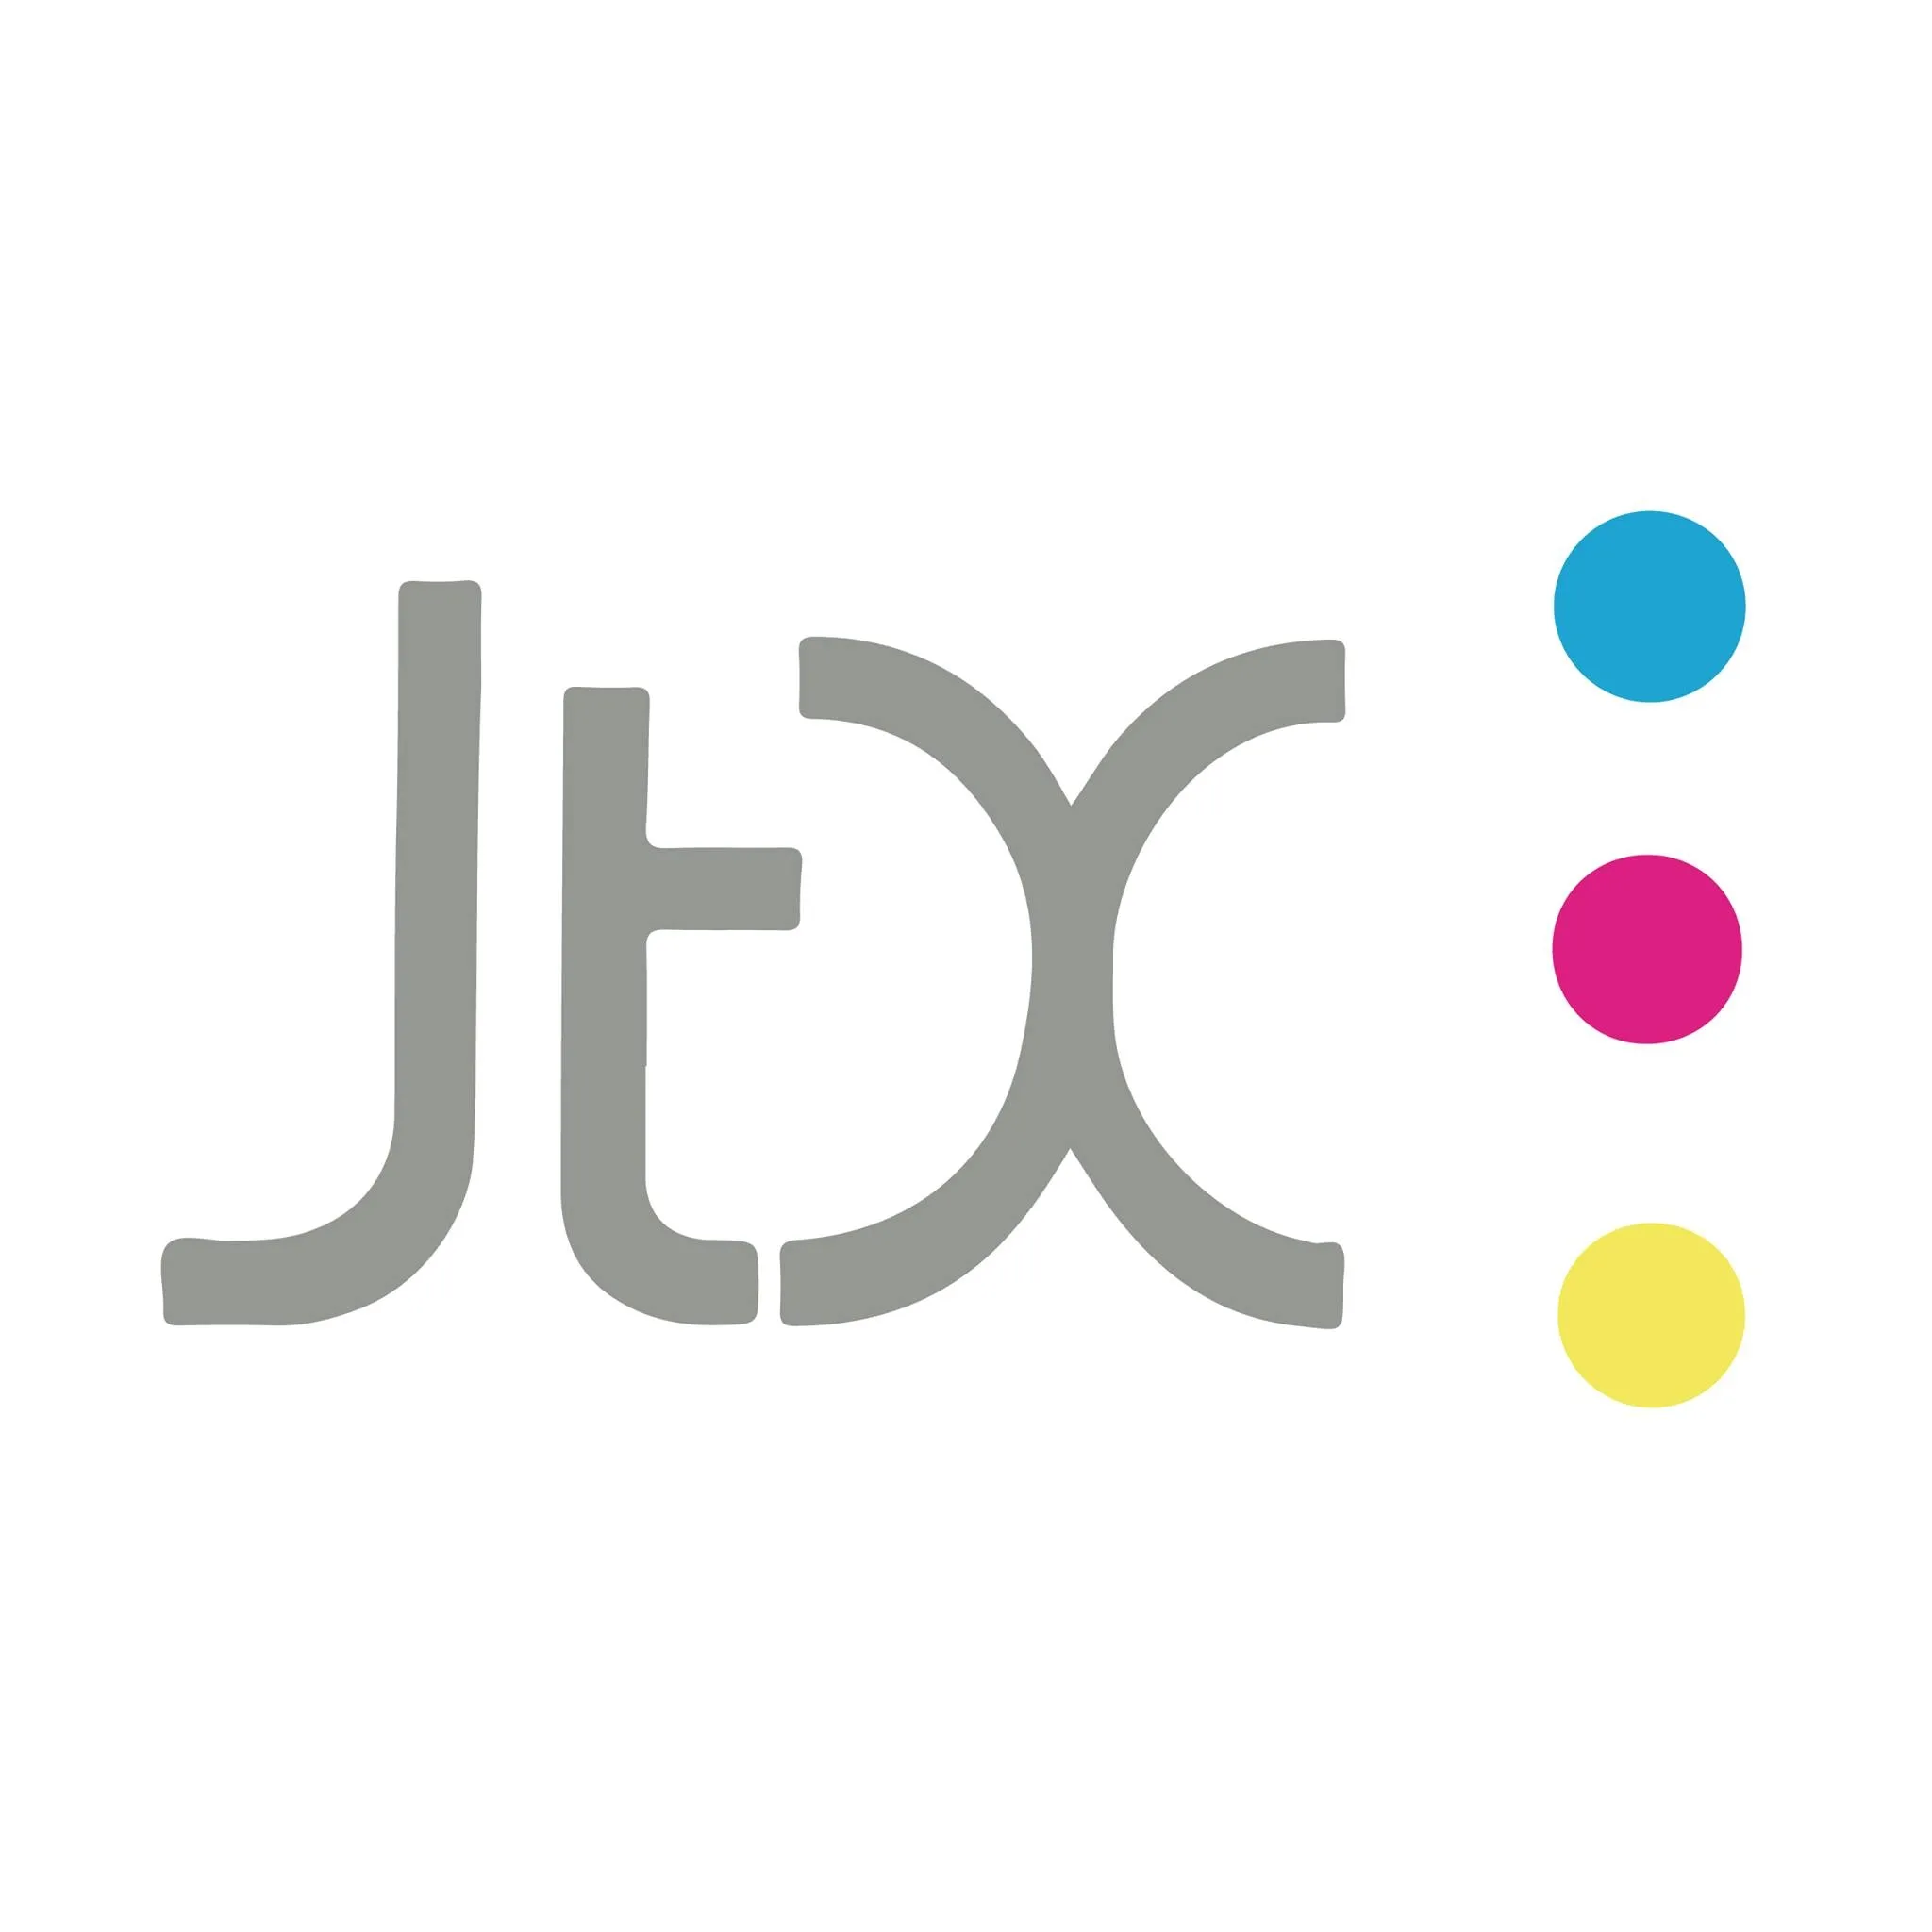 Jetrix Soluciones Graficas S.A. de C.V. logo